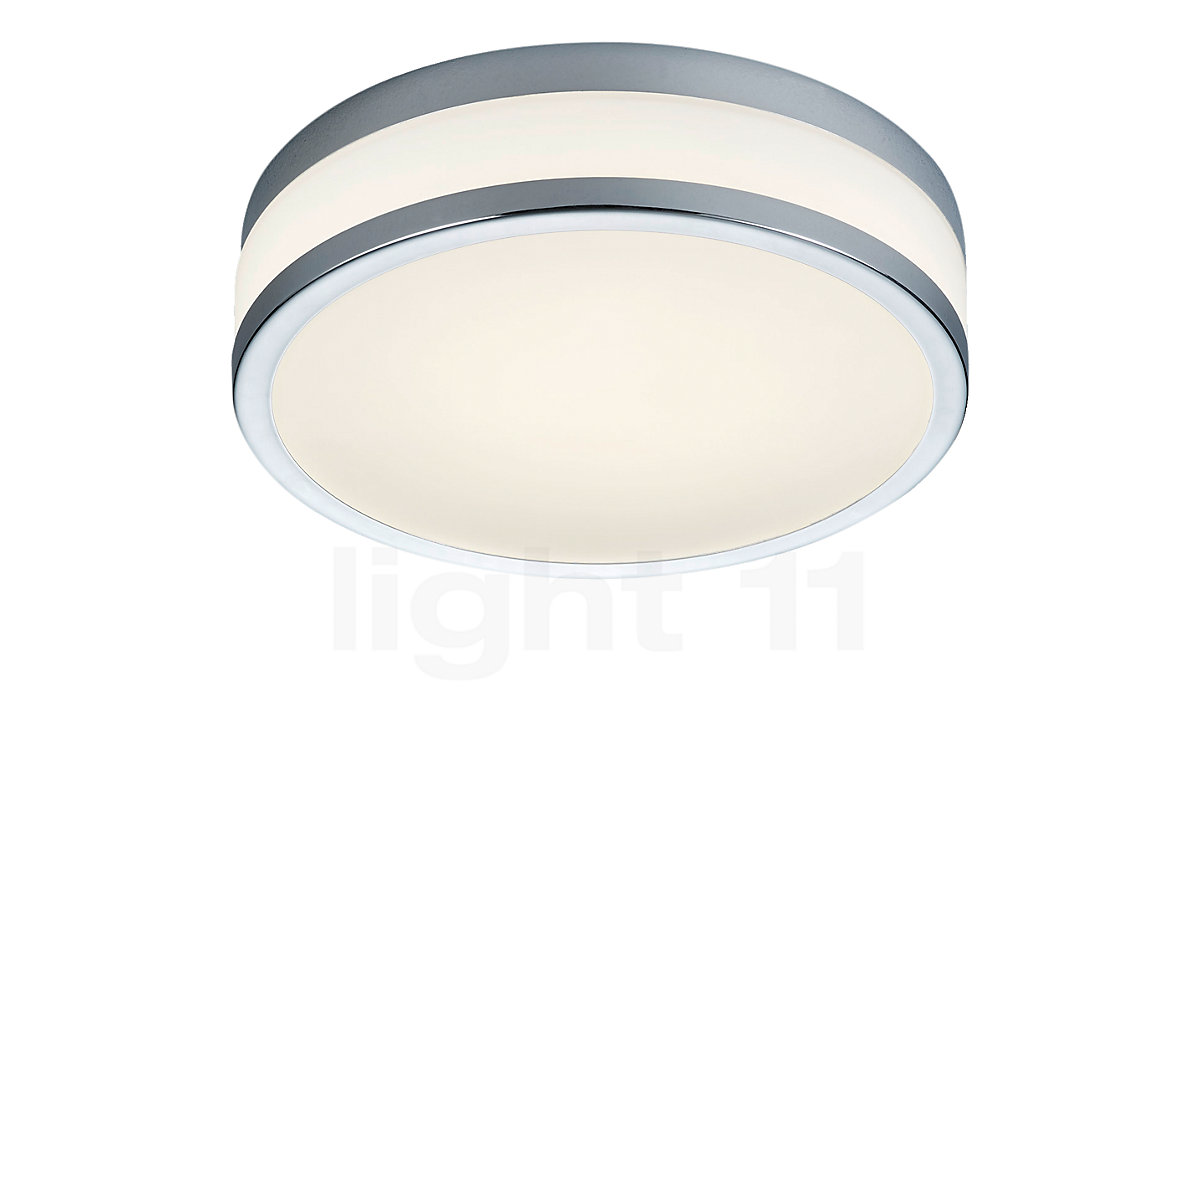 Buy Ceiling Light LED at light11.eu